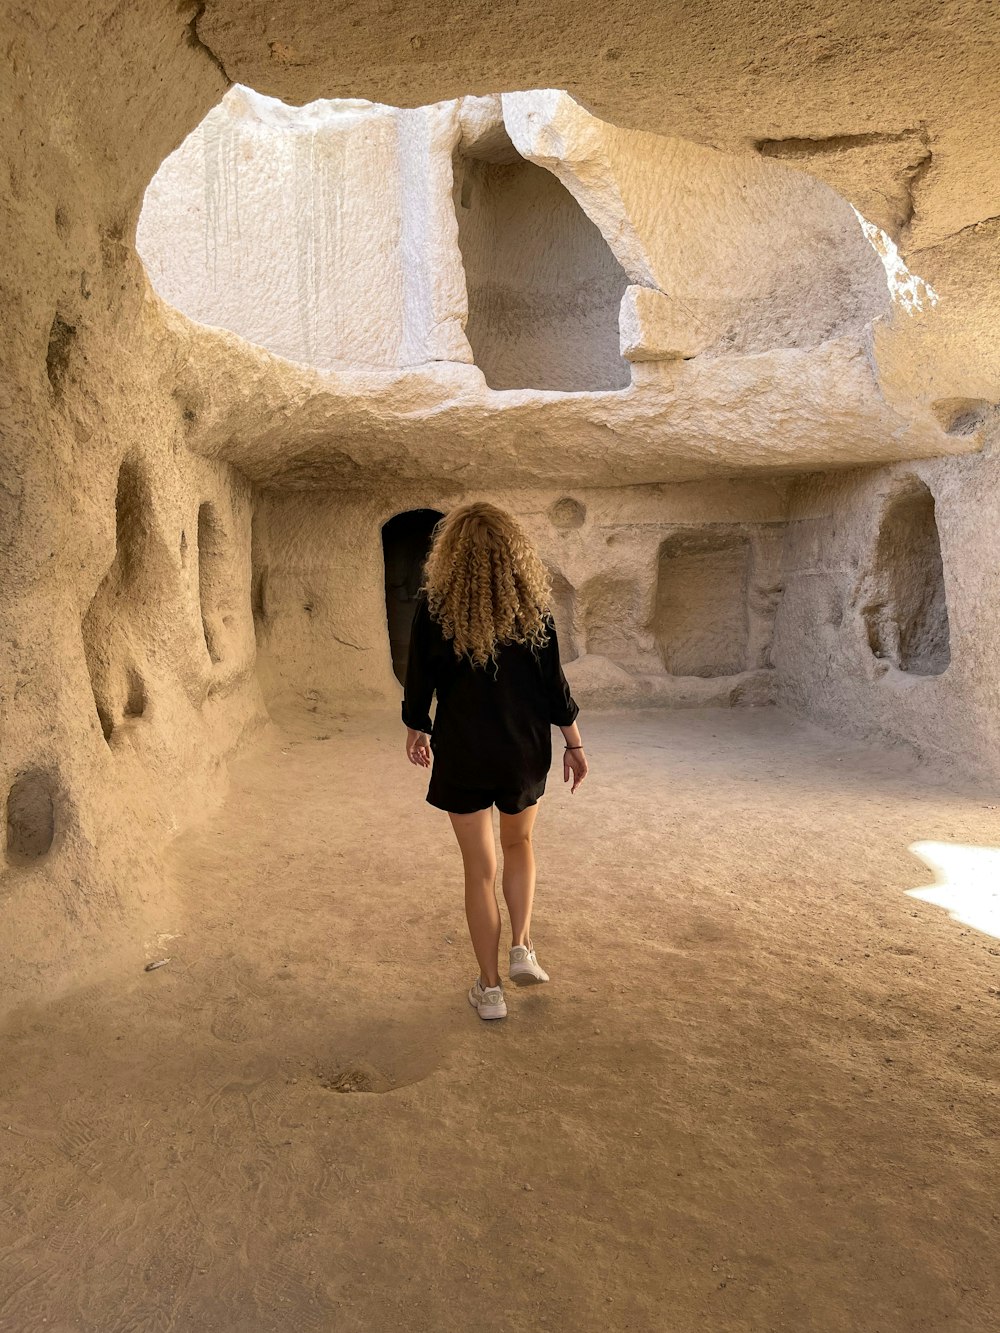 Une femme marche dans une zone semblable à une grotte